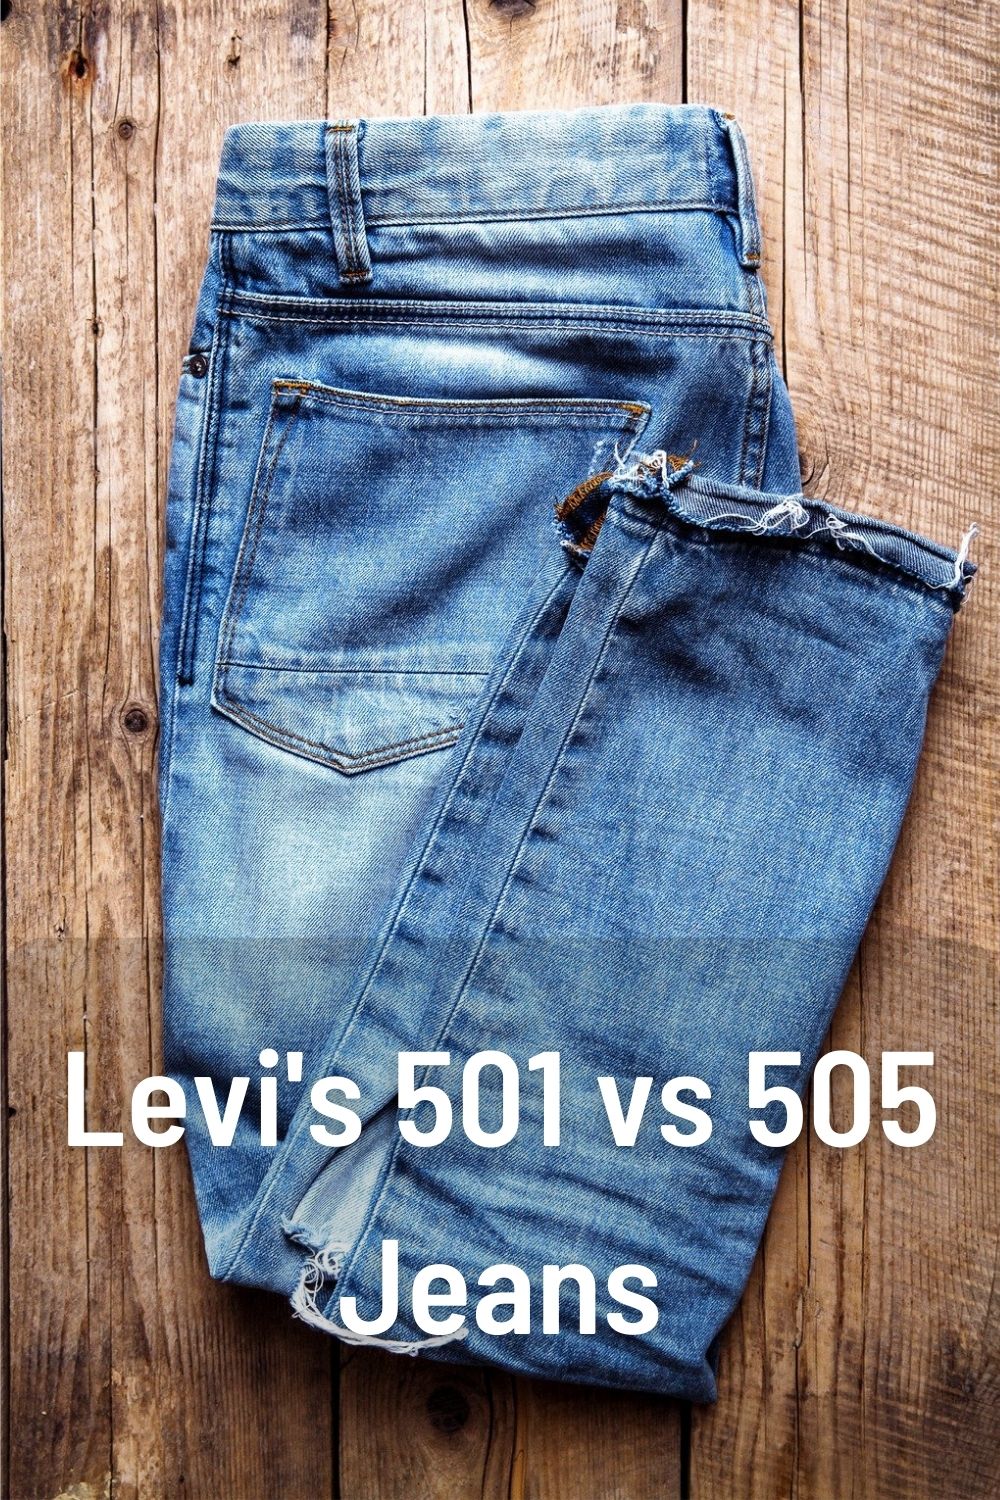 Levi's 501 vs 505 Jeans